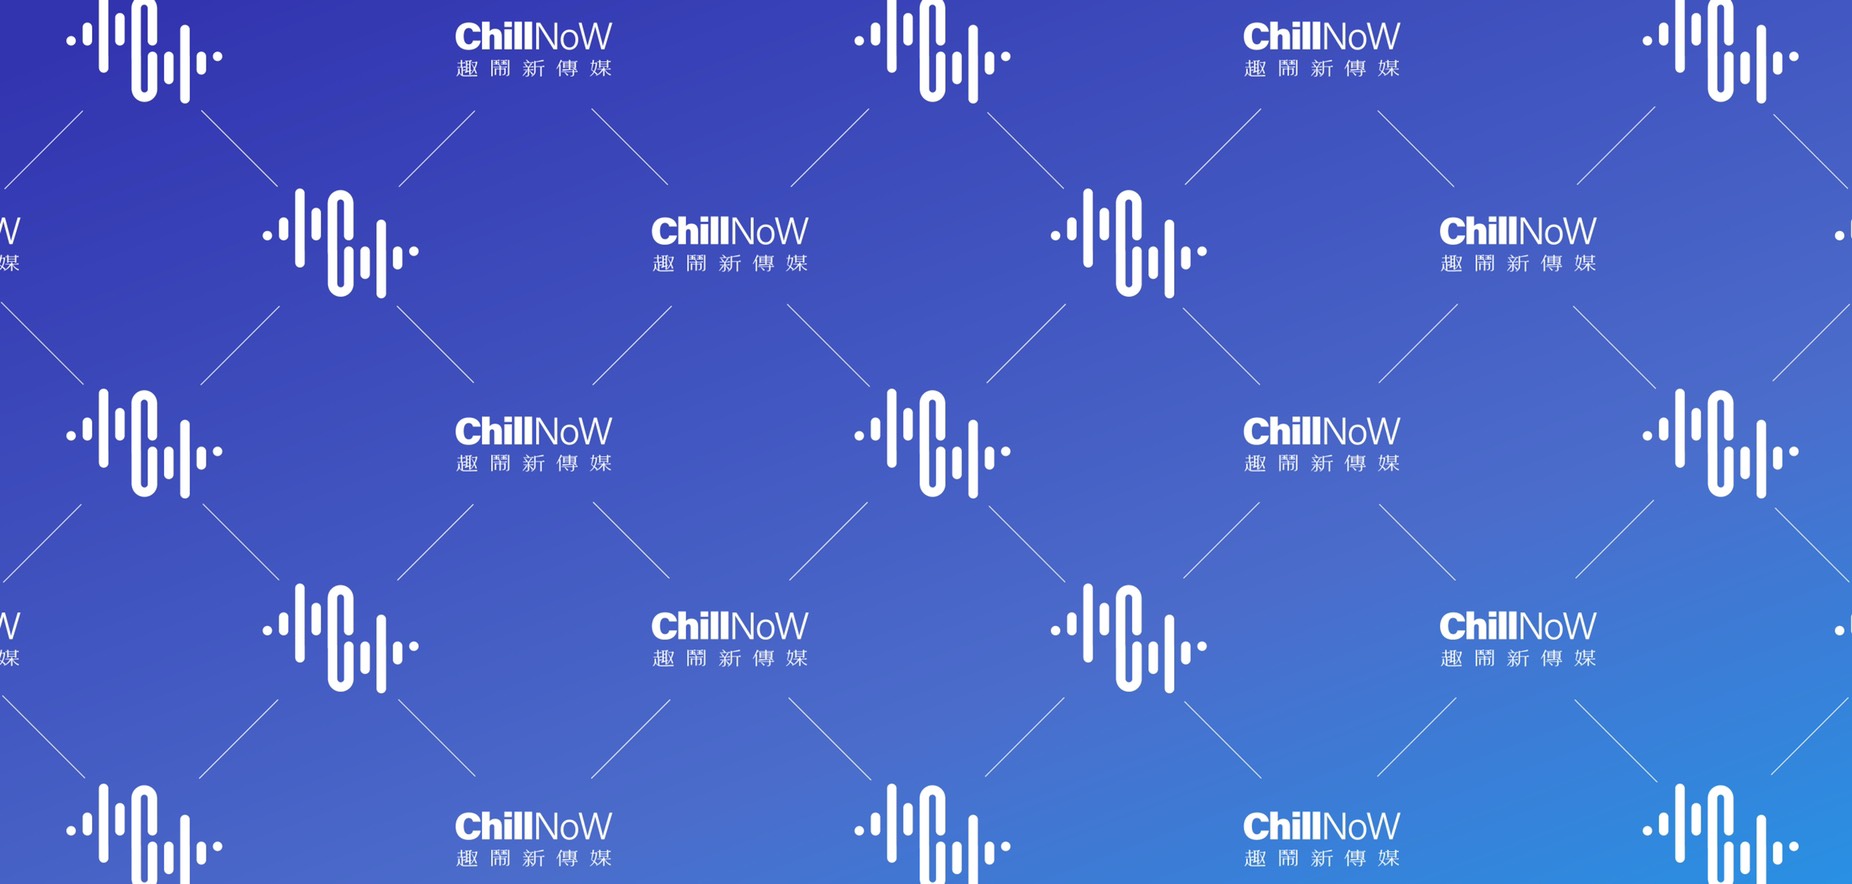 ChillNoW-GO banner